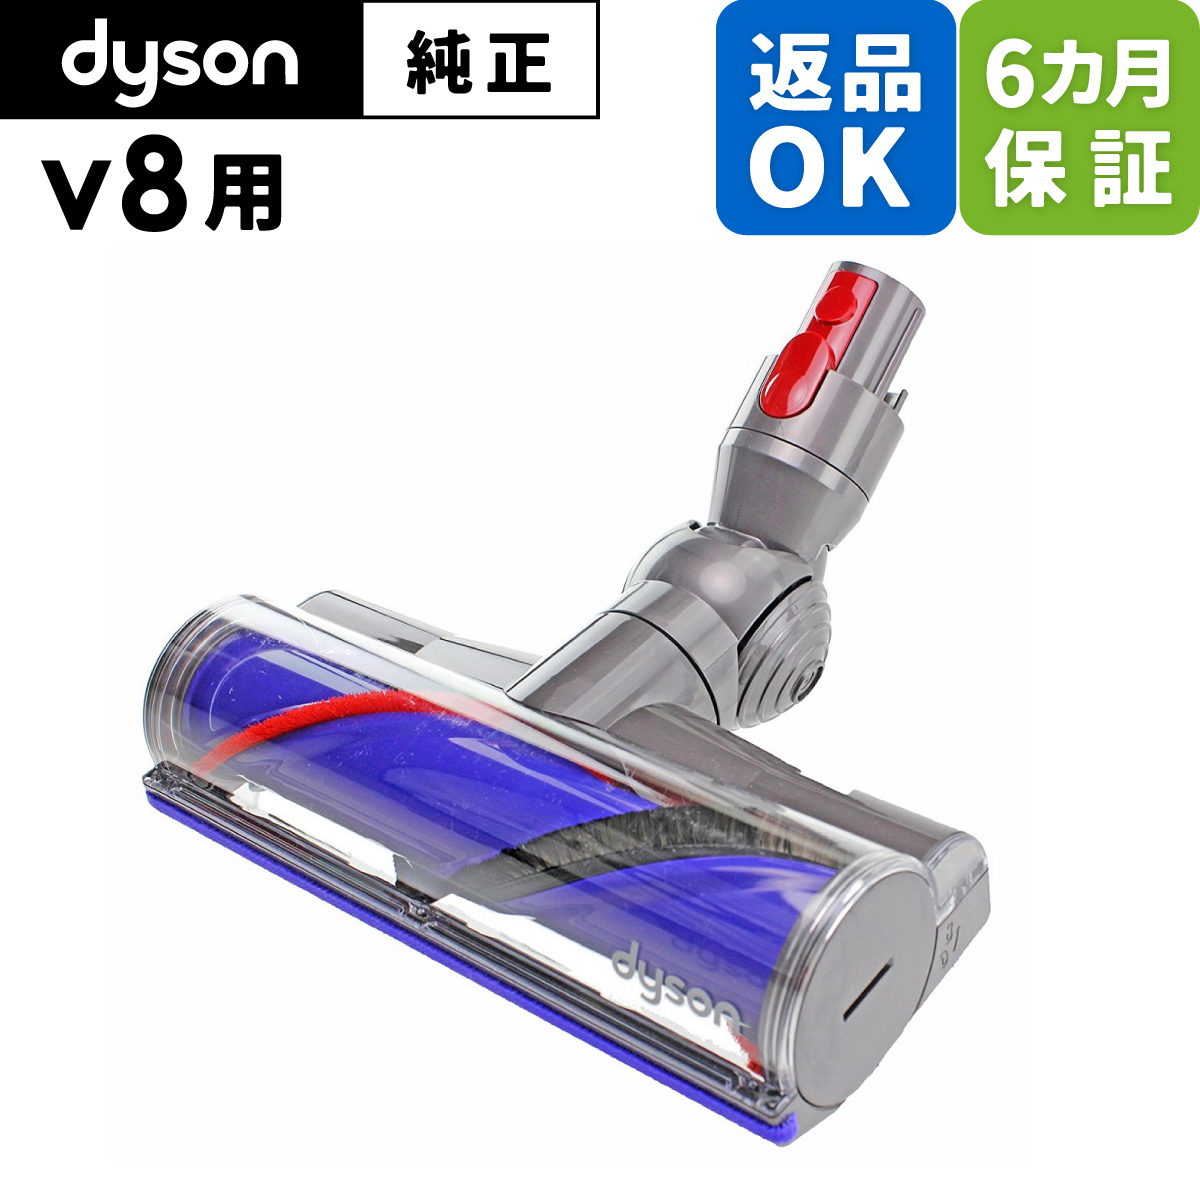 ダイソン Dyson V8 ダイレクトドライブクリーナーヘッド (掃除機パーツ